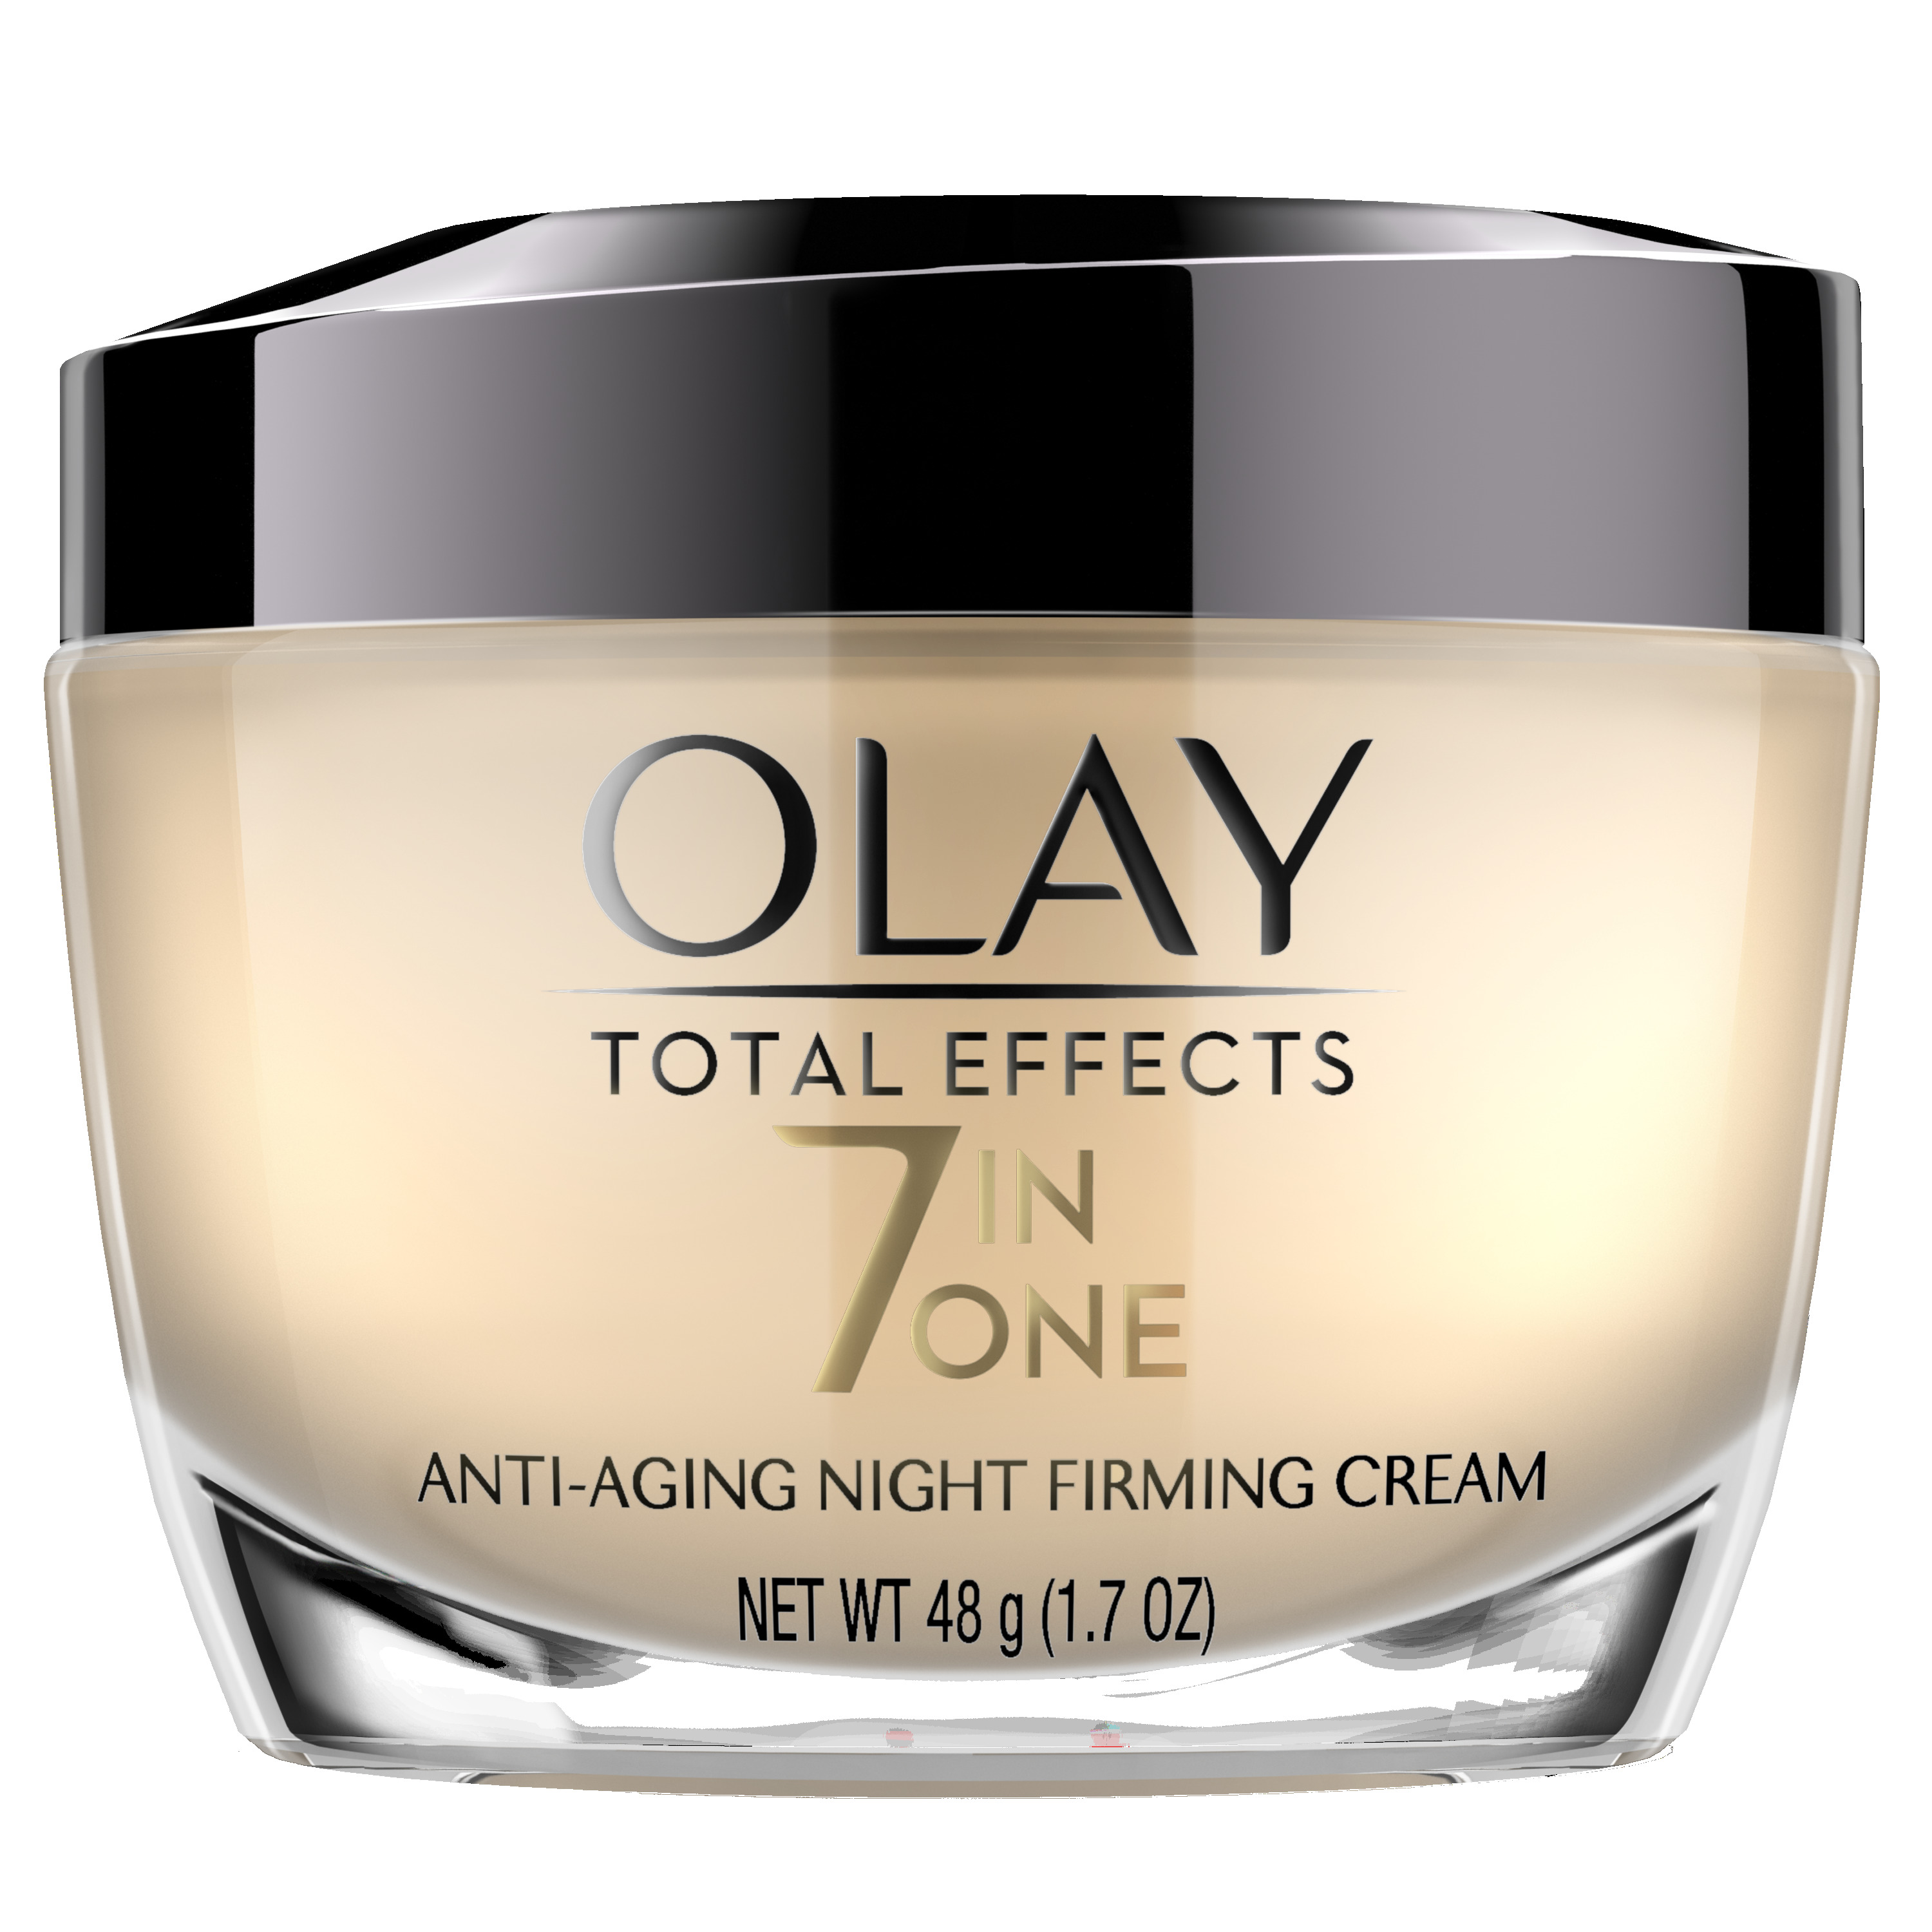 Olay Cream - Homecare24